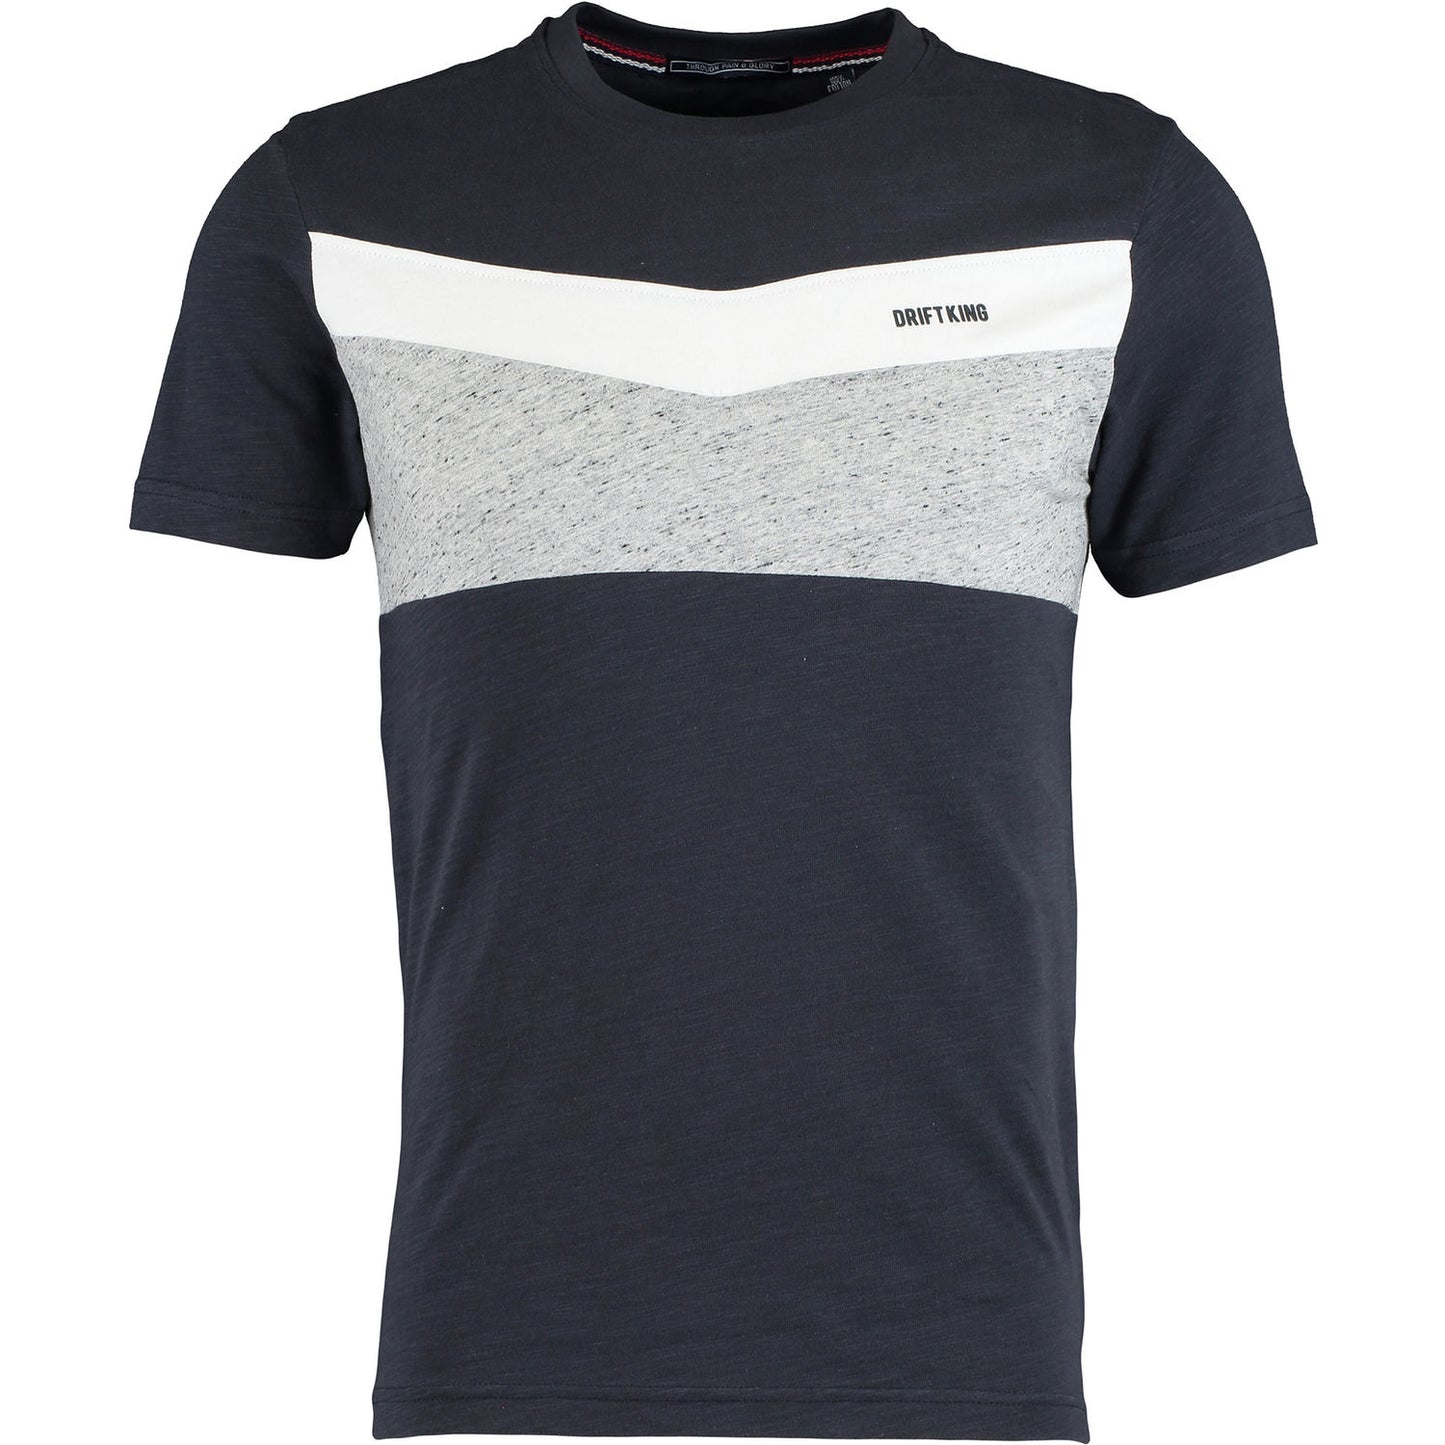 Drift King - Rocket T-Shirt - LabelledUp.com